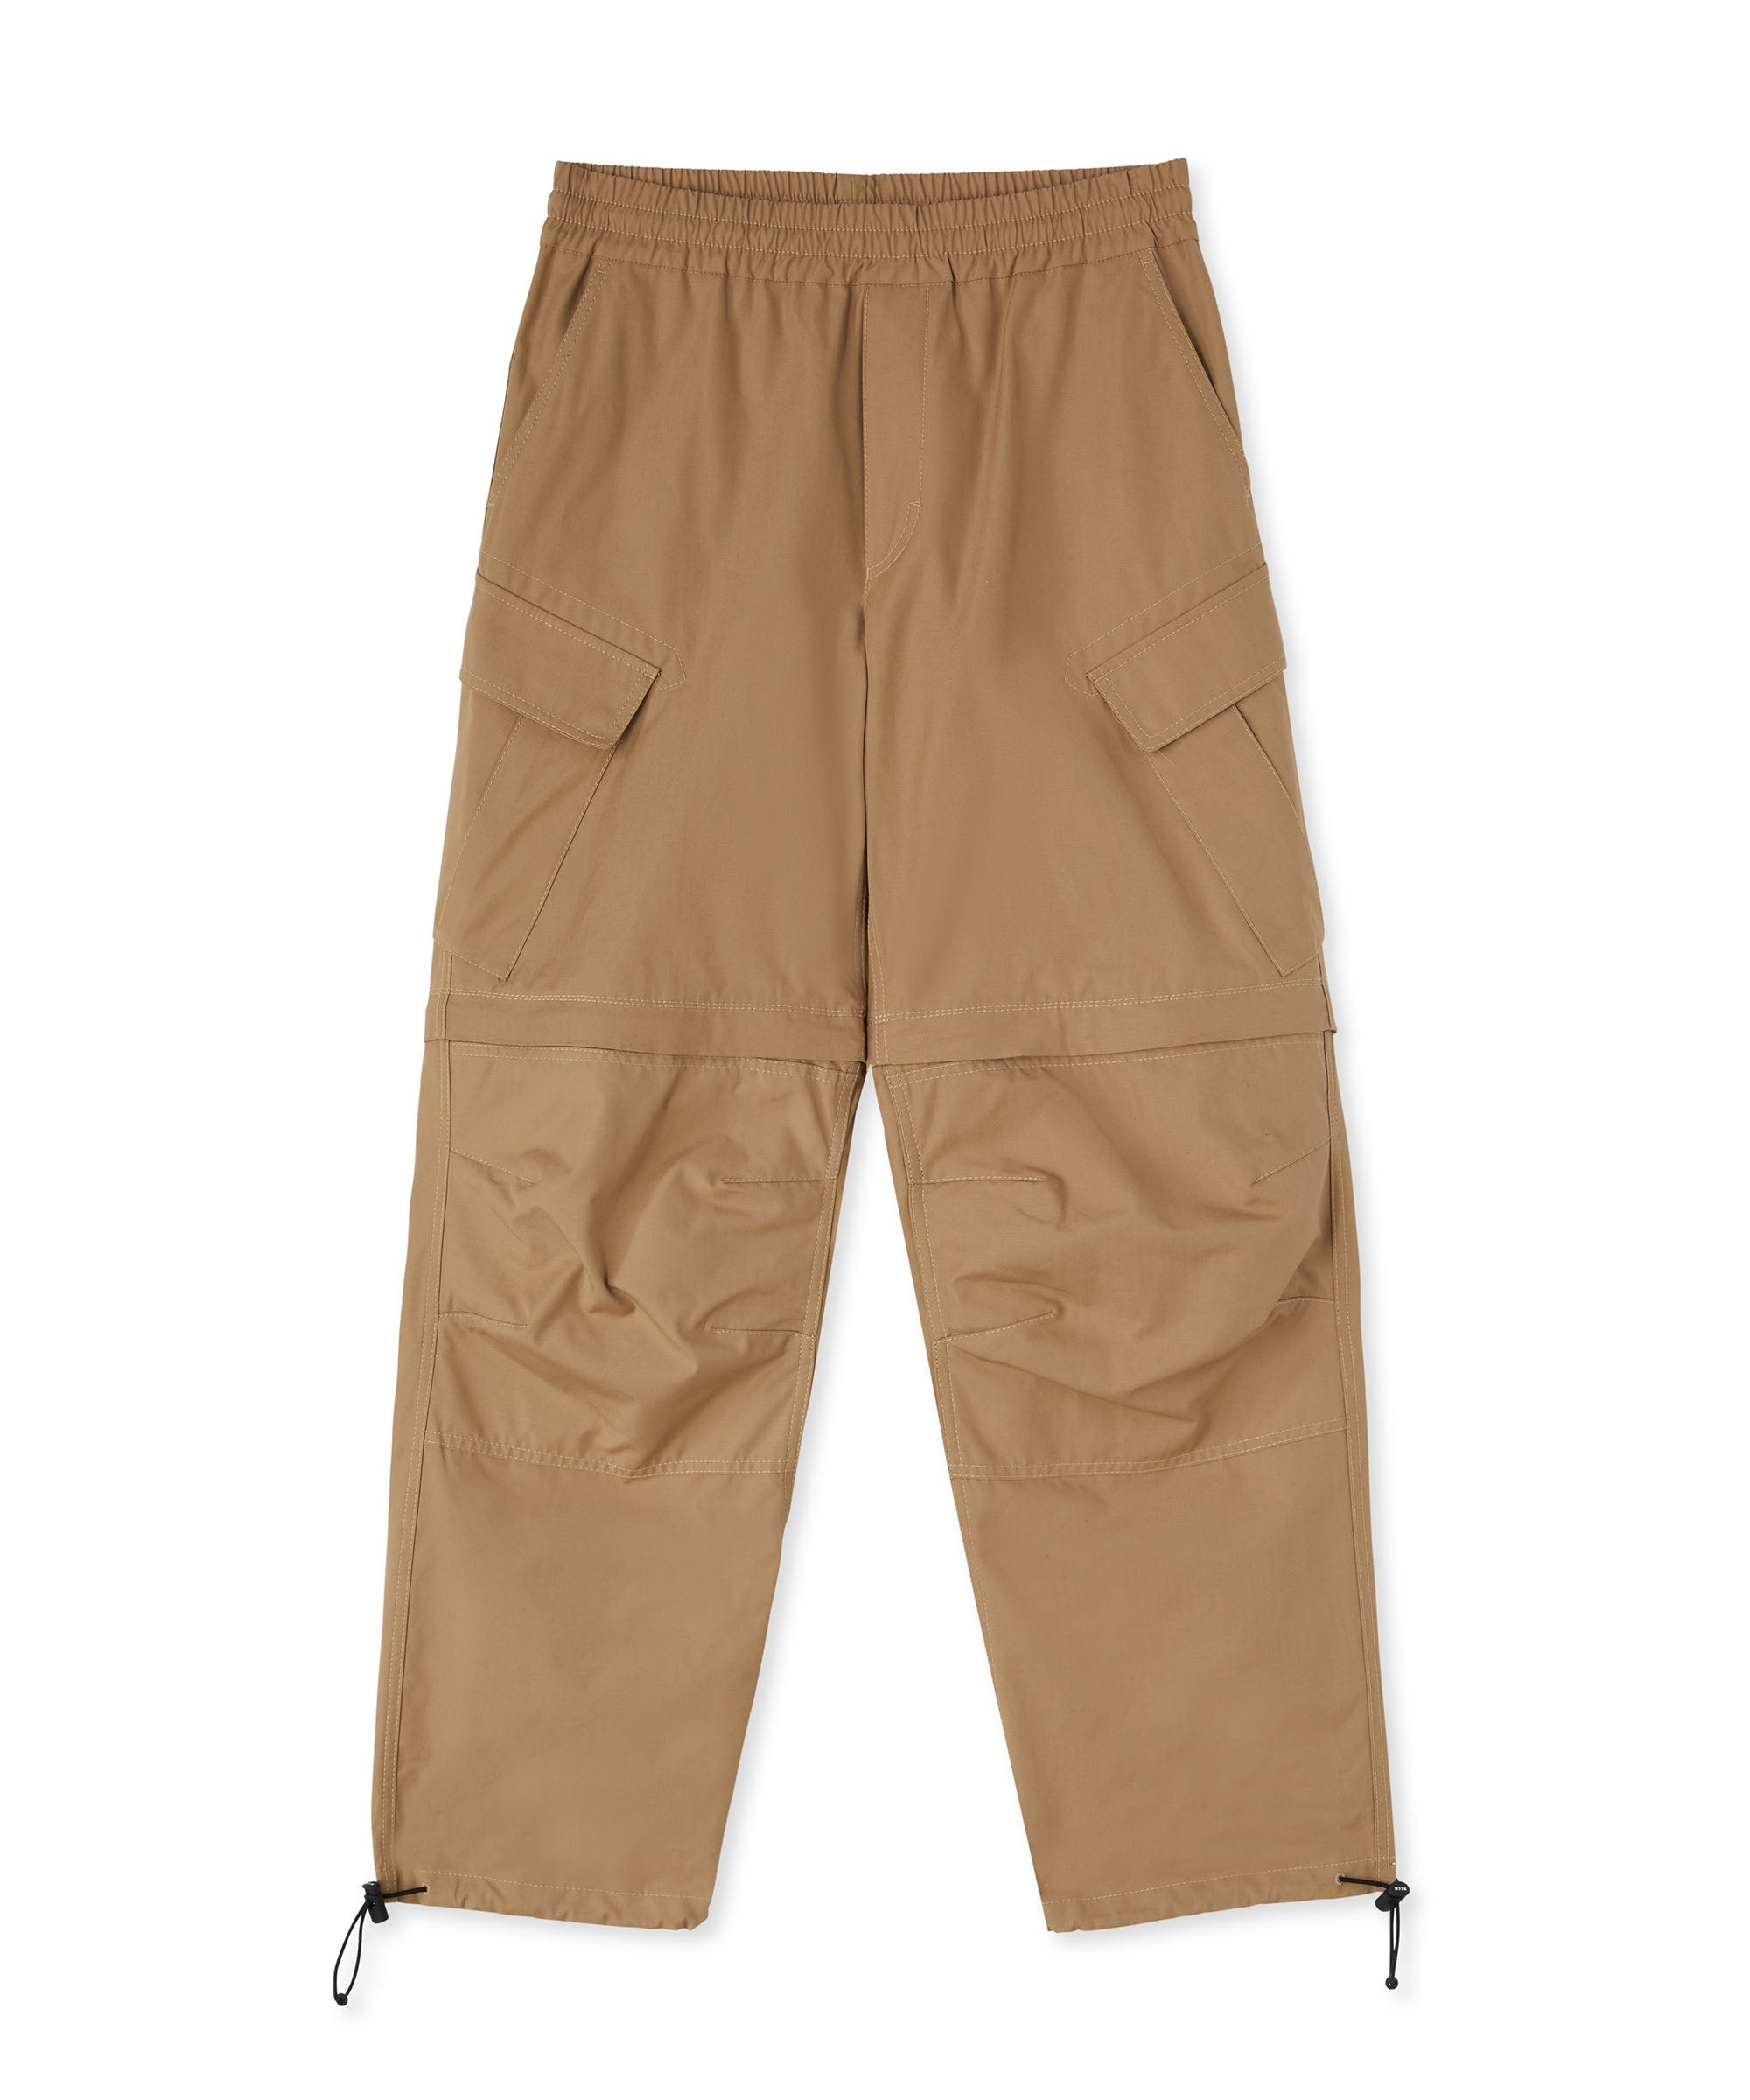 Solid color cotton cargo pants - 2